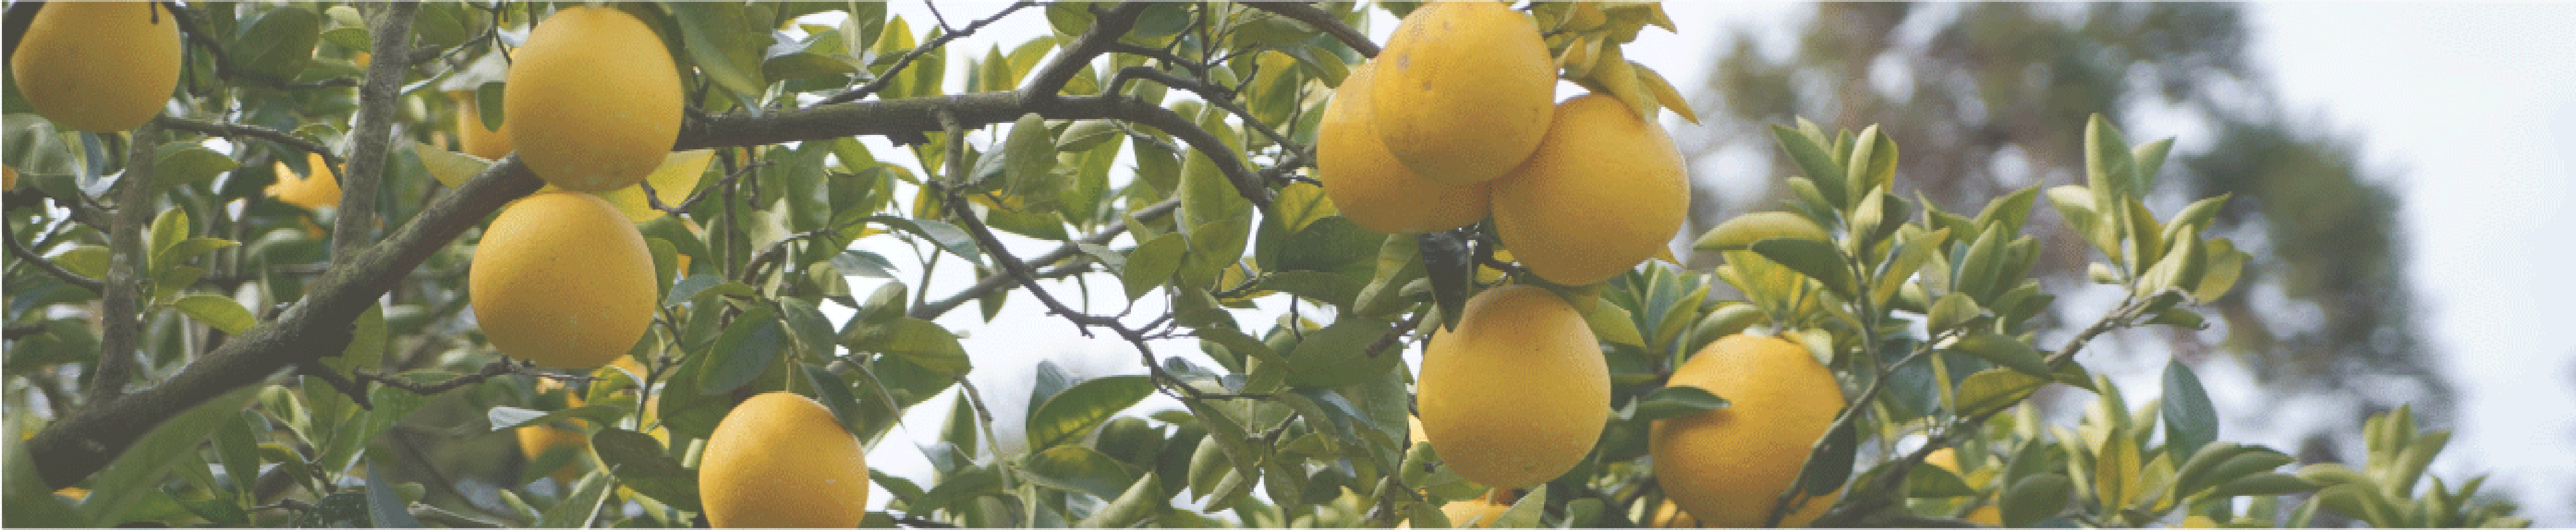 松本果樹園の柑橘類